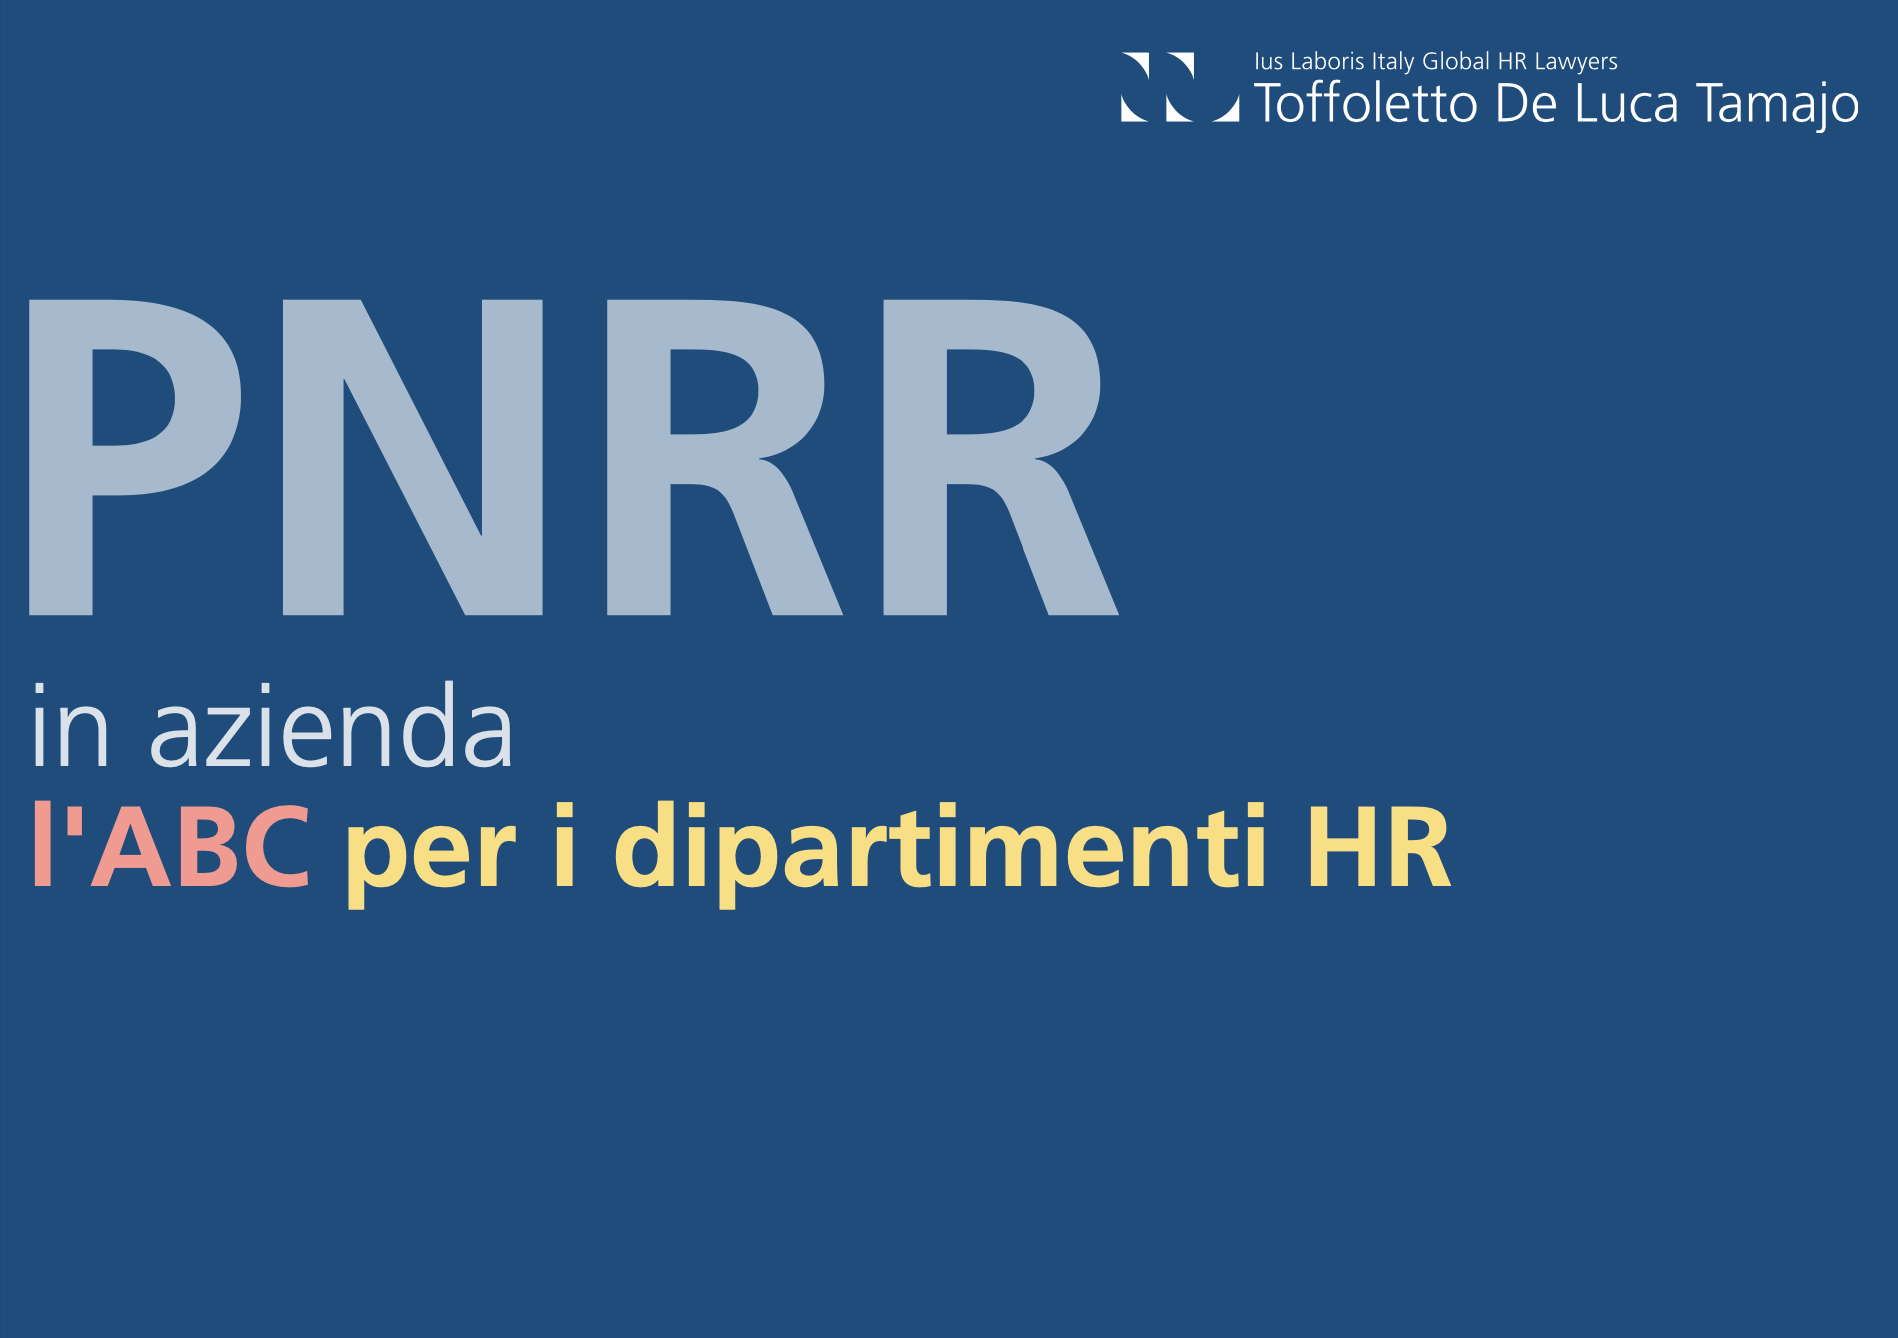 PNRR in azienda: le novità per le HR